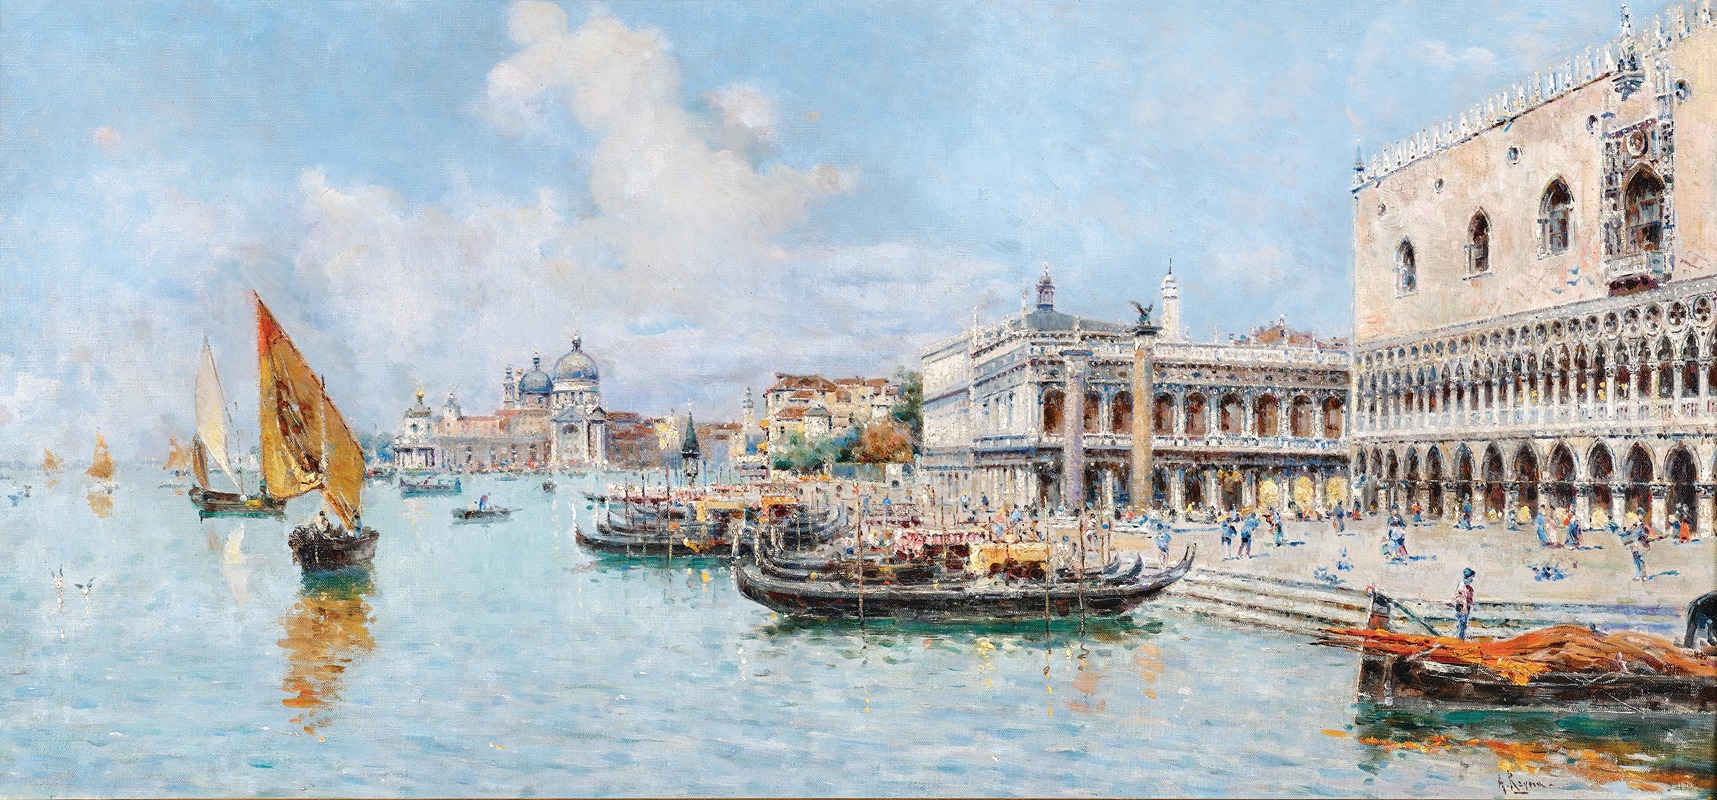 Antonio María de Reyna Manescau - Venice, view of Bacino di San Marco